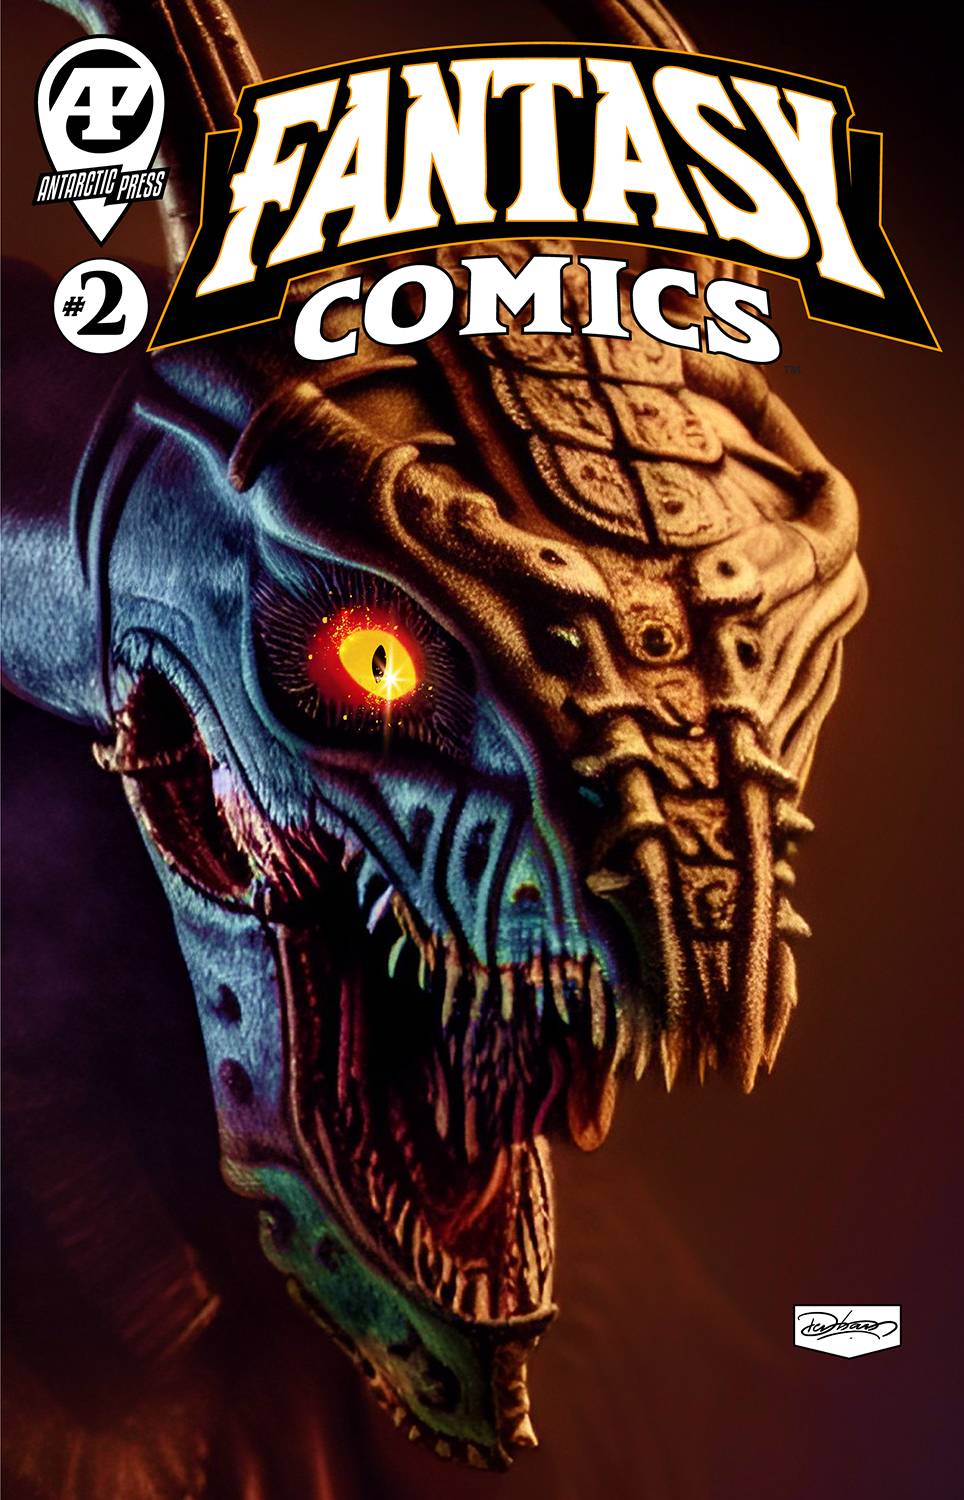 Fantasy Comics #2 (C: 0-1-1) (06/28/2023)